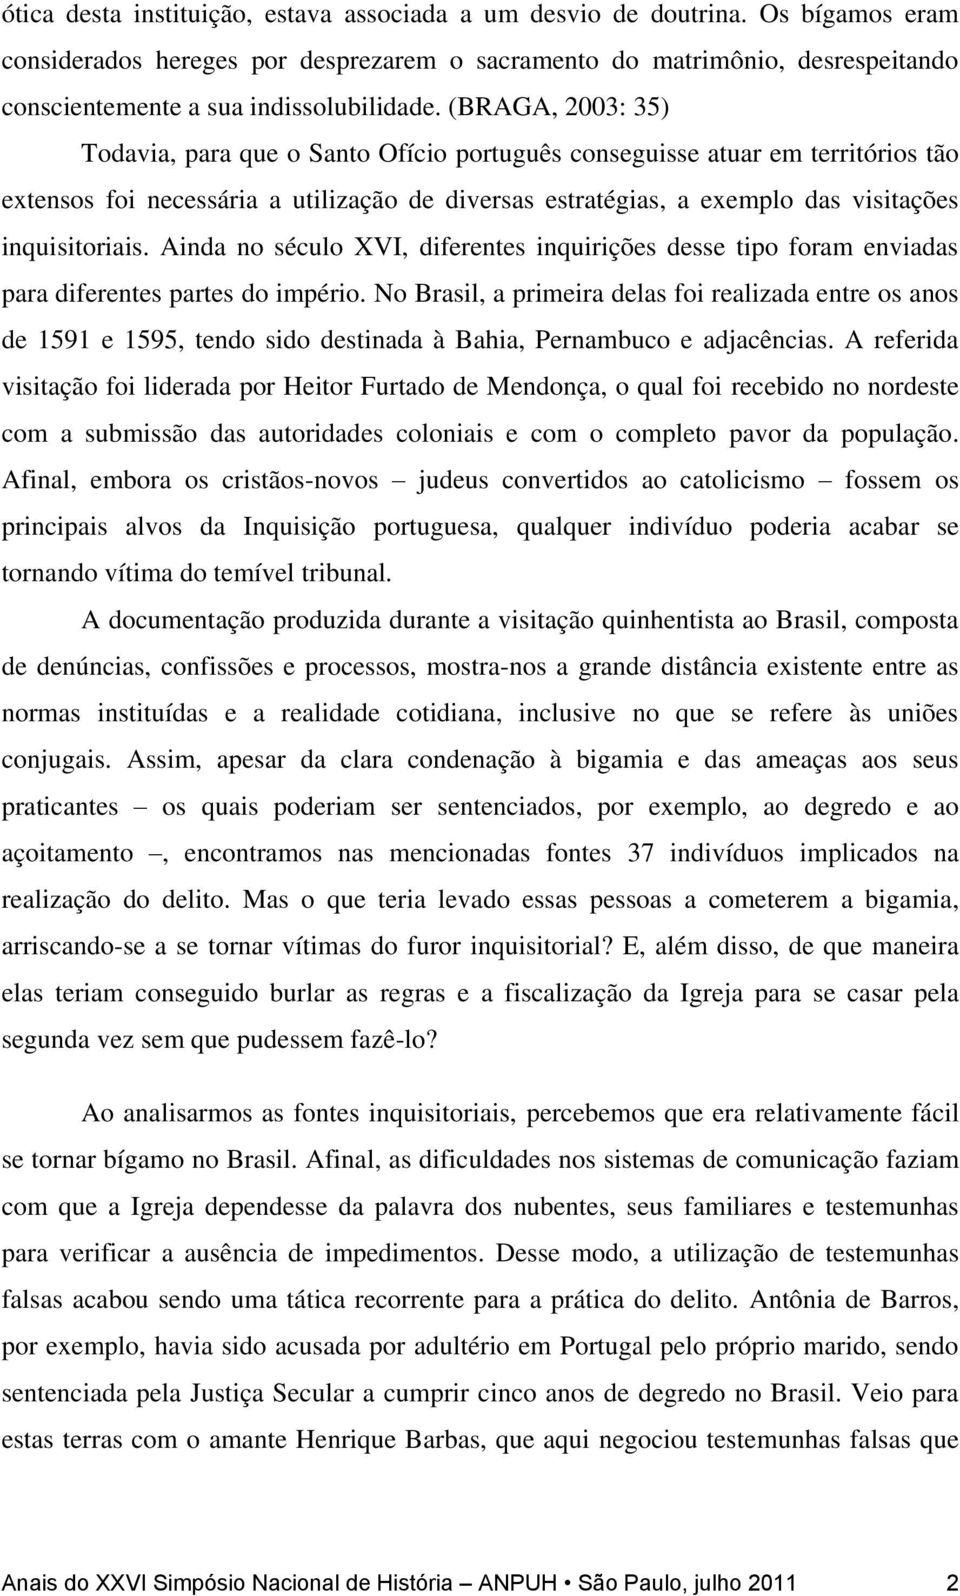 (BRAGA, 2003: 35) Todavia, para que o Santo Ofício português conseguisse atuar em territórios tão extensos foi necessária a utilização de diversas estratégias, a exemplo das visitações inquisitoriais.